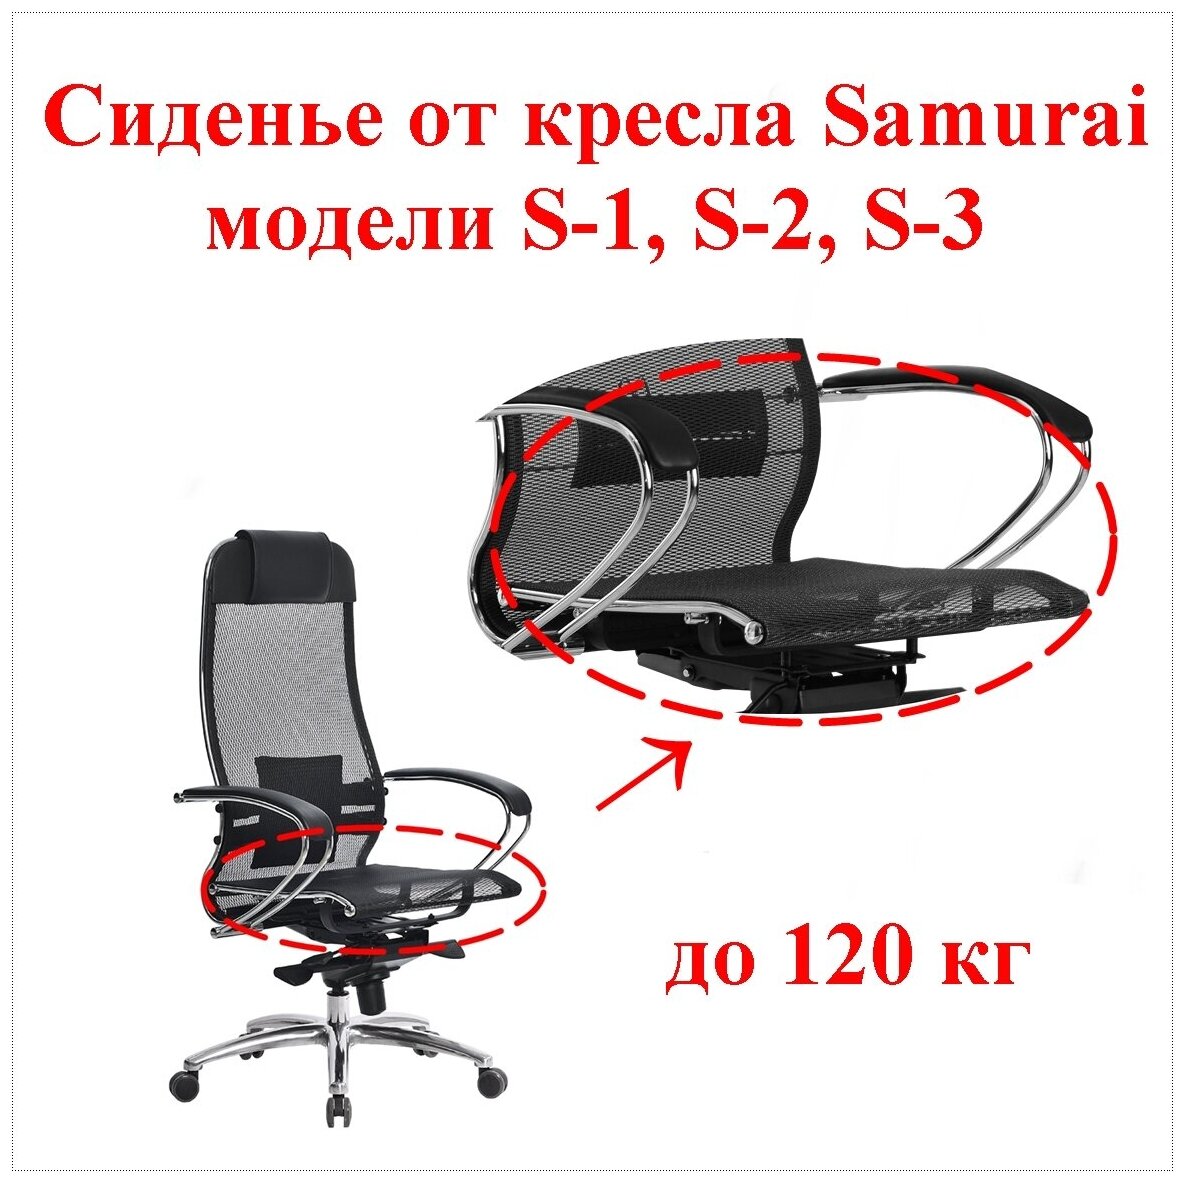 Сиденье штатное для кресла Samurai Метта. Применяемость: модели S-1, S-2, S-3. Материал: сетчатая ткань, цвет чёрный. Нагрузка до 120 кг.